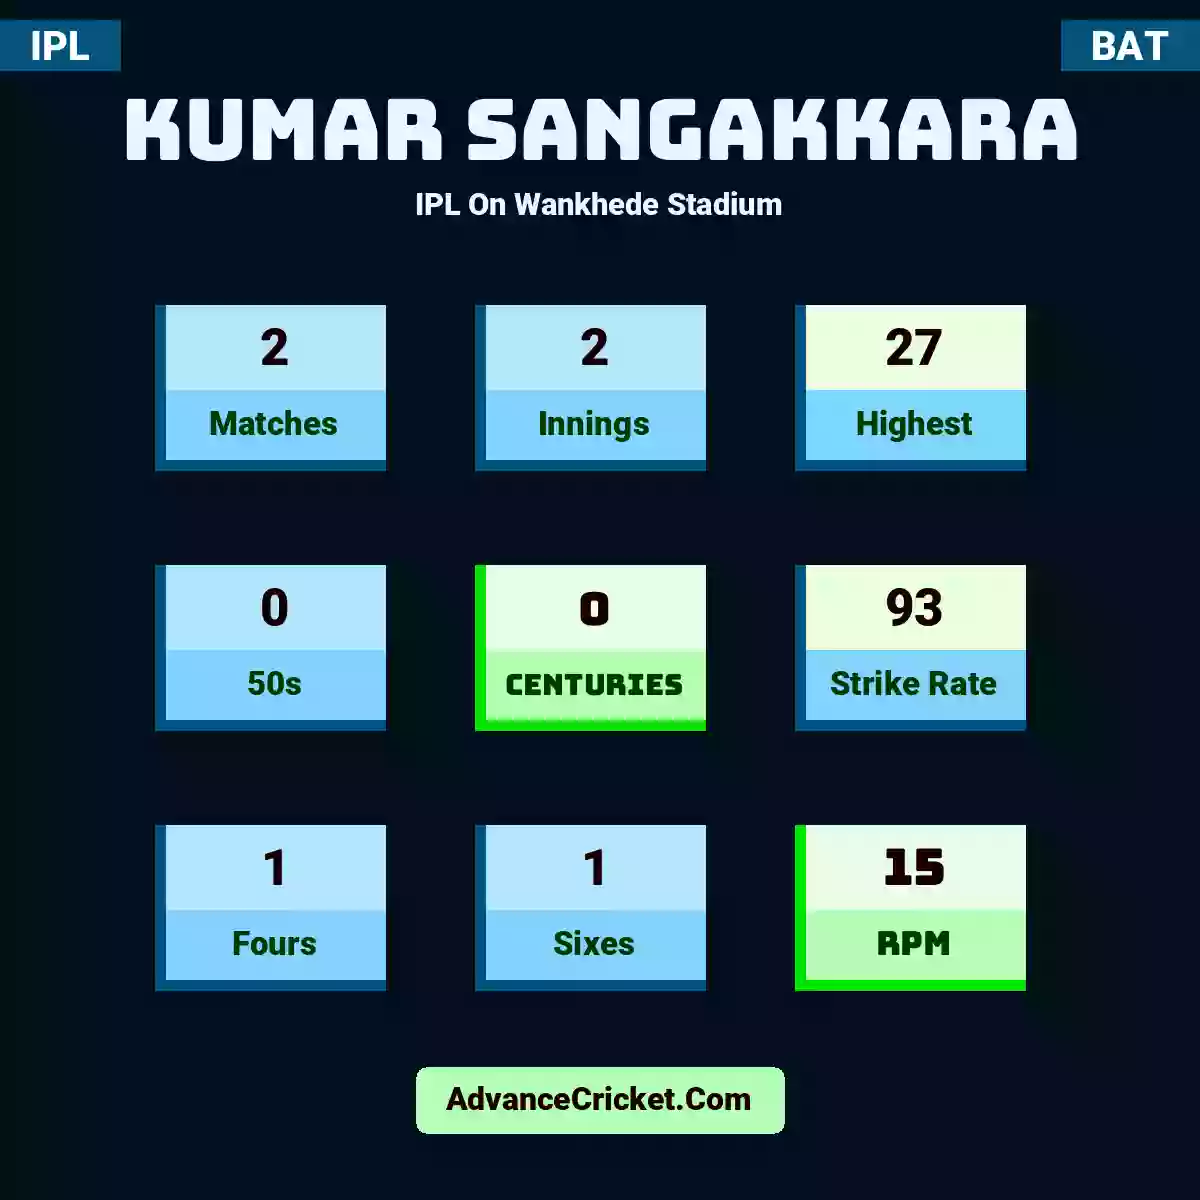 Kumar Sangakkara IPL  On Wankhede Stadium, Kumar Sangakkara played 2 matches, scored 27 runs as highest, 0 half-centuries, and 0 centuries, with a strike rate of 93. K.Sangakkara hit 1 fours and 1 sixes, with an RPM of 15.